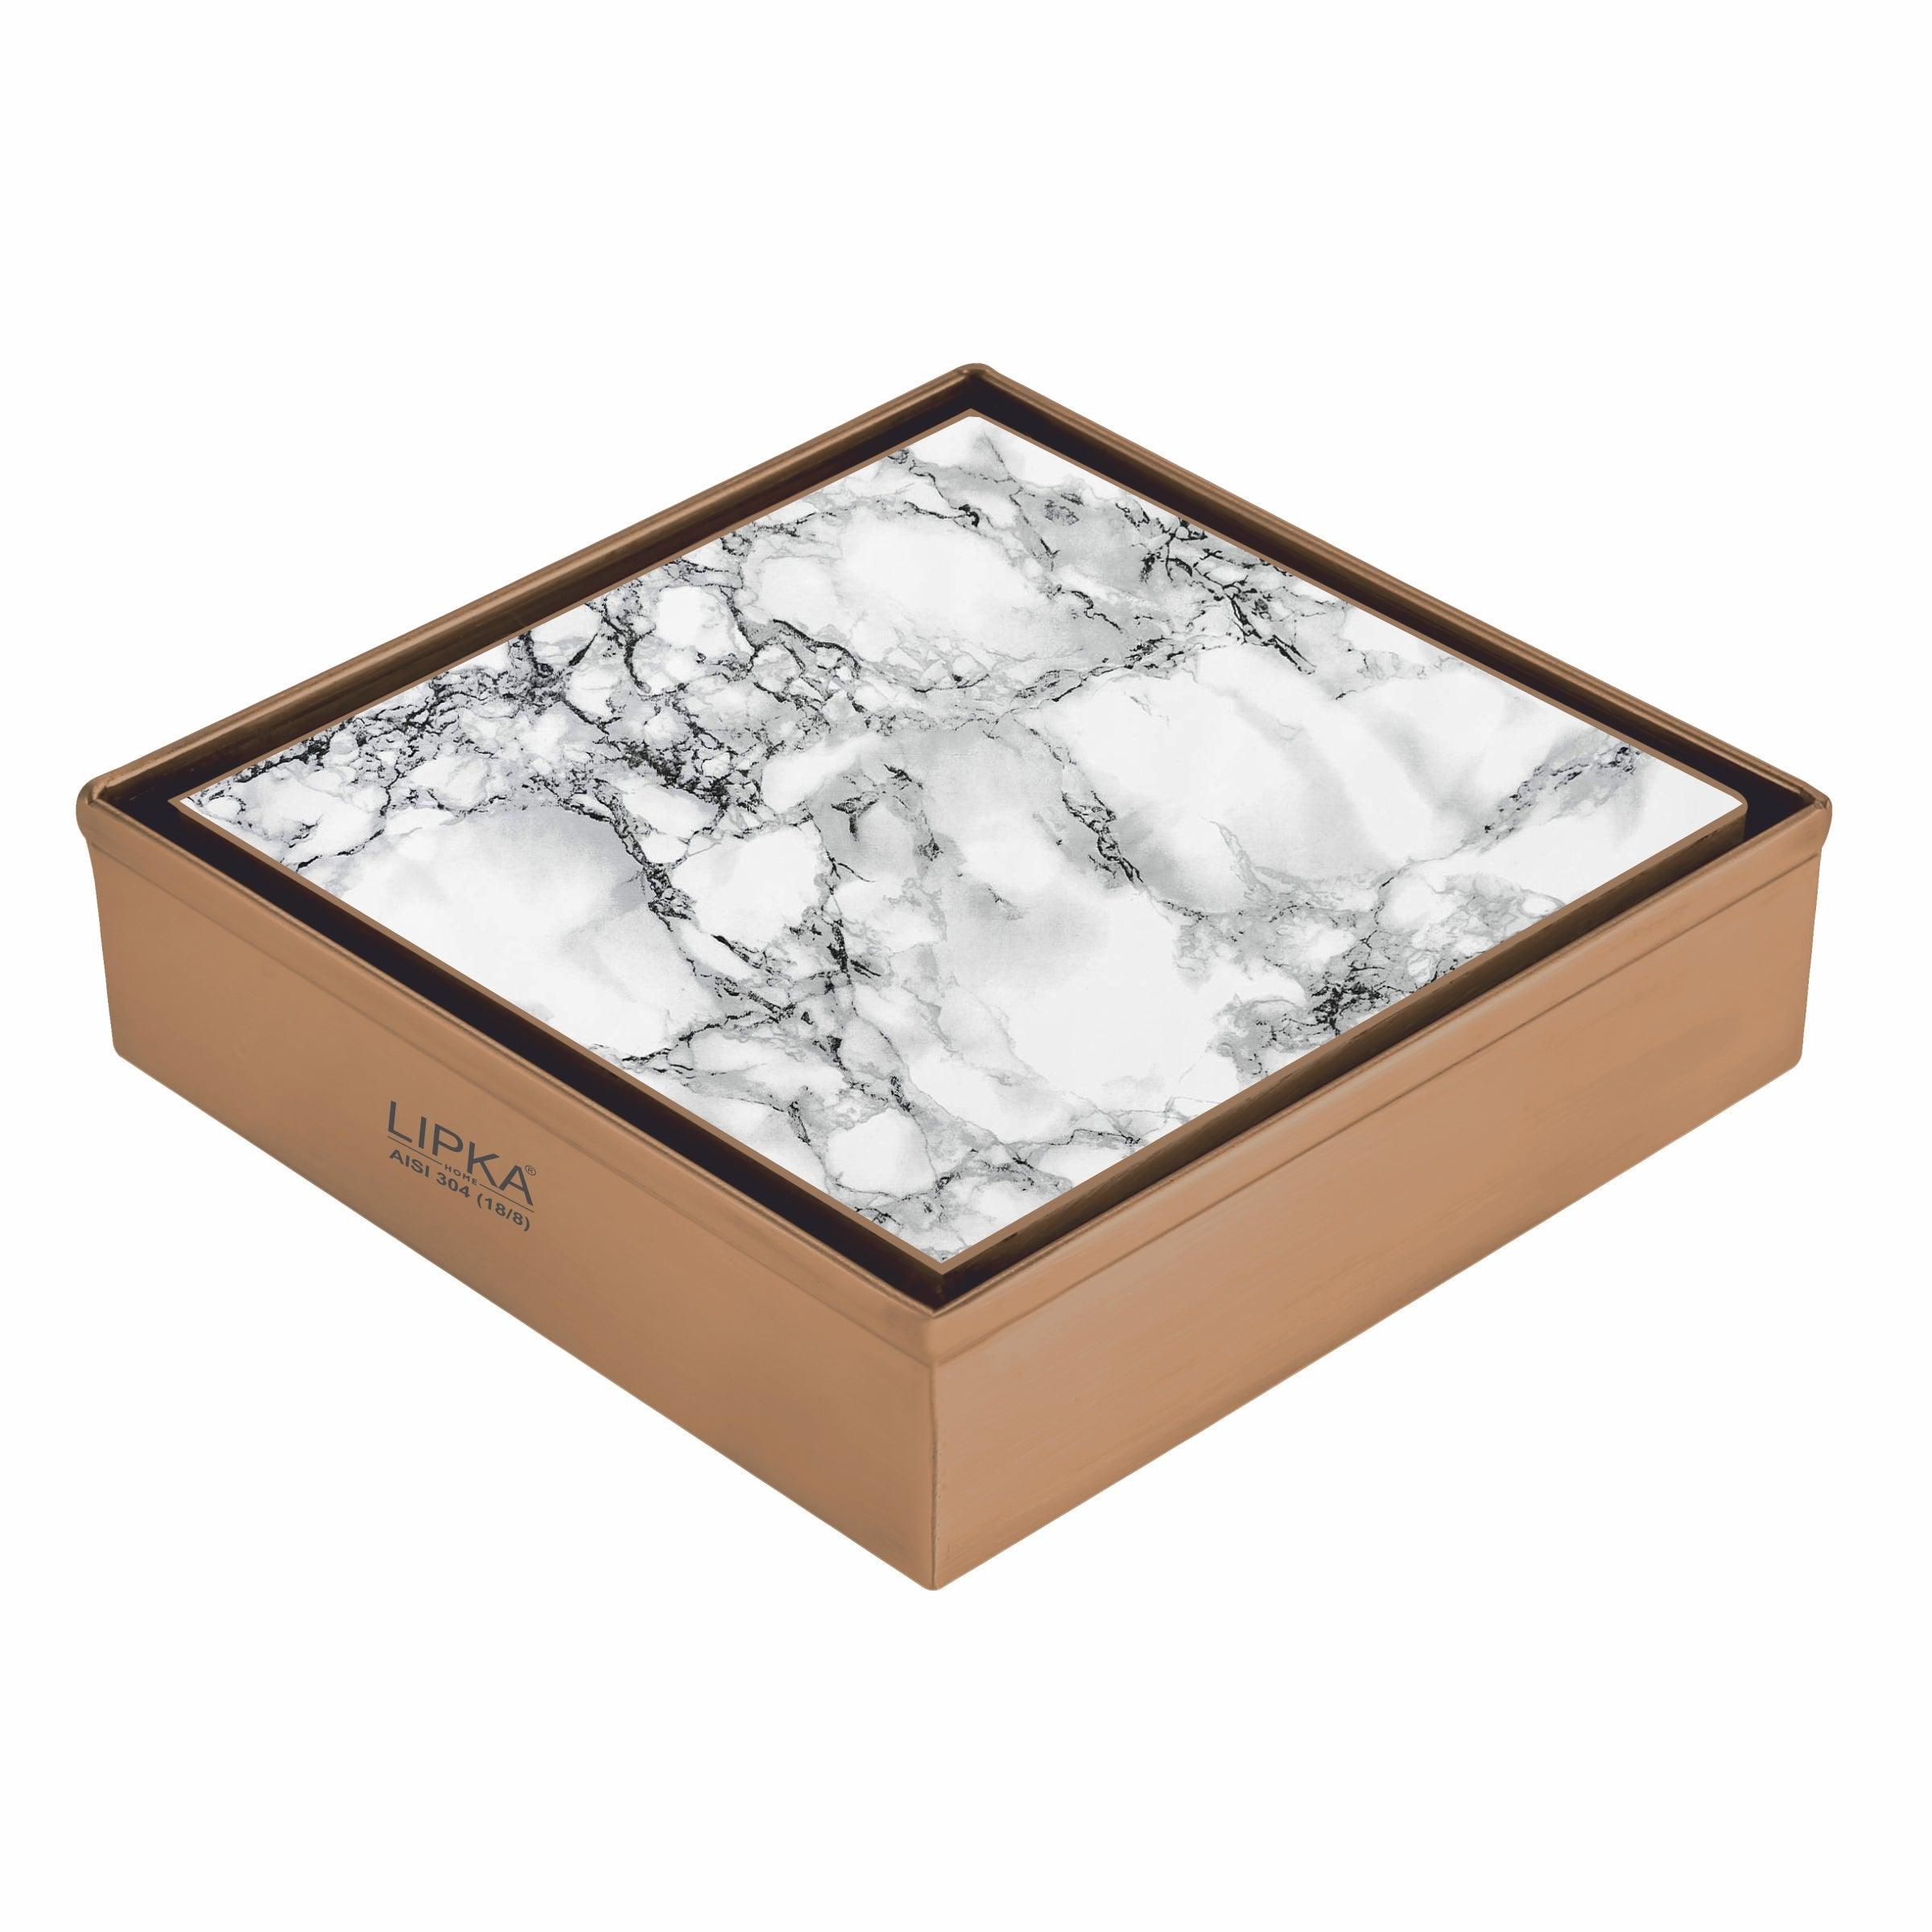 Marble Insert Square Floor Drain - Antique Copper (6 x 6 Inches)